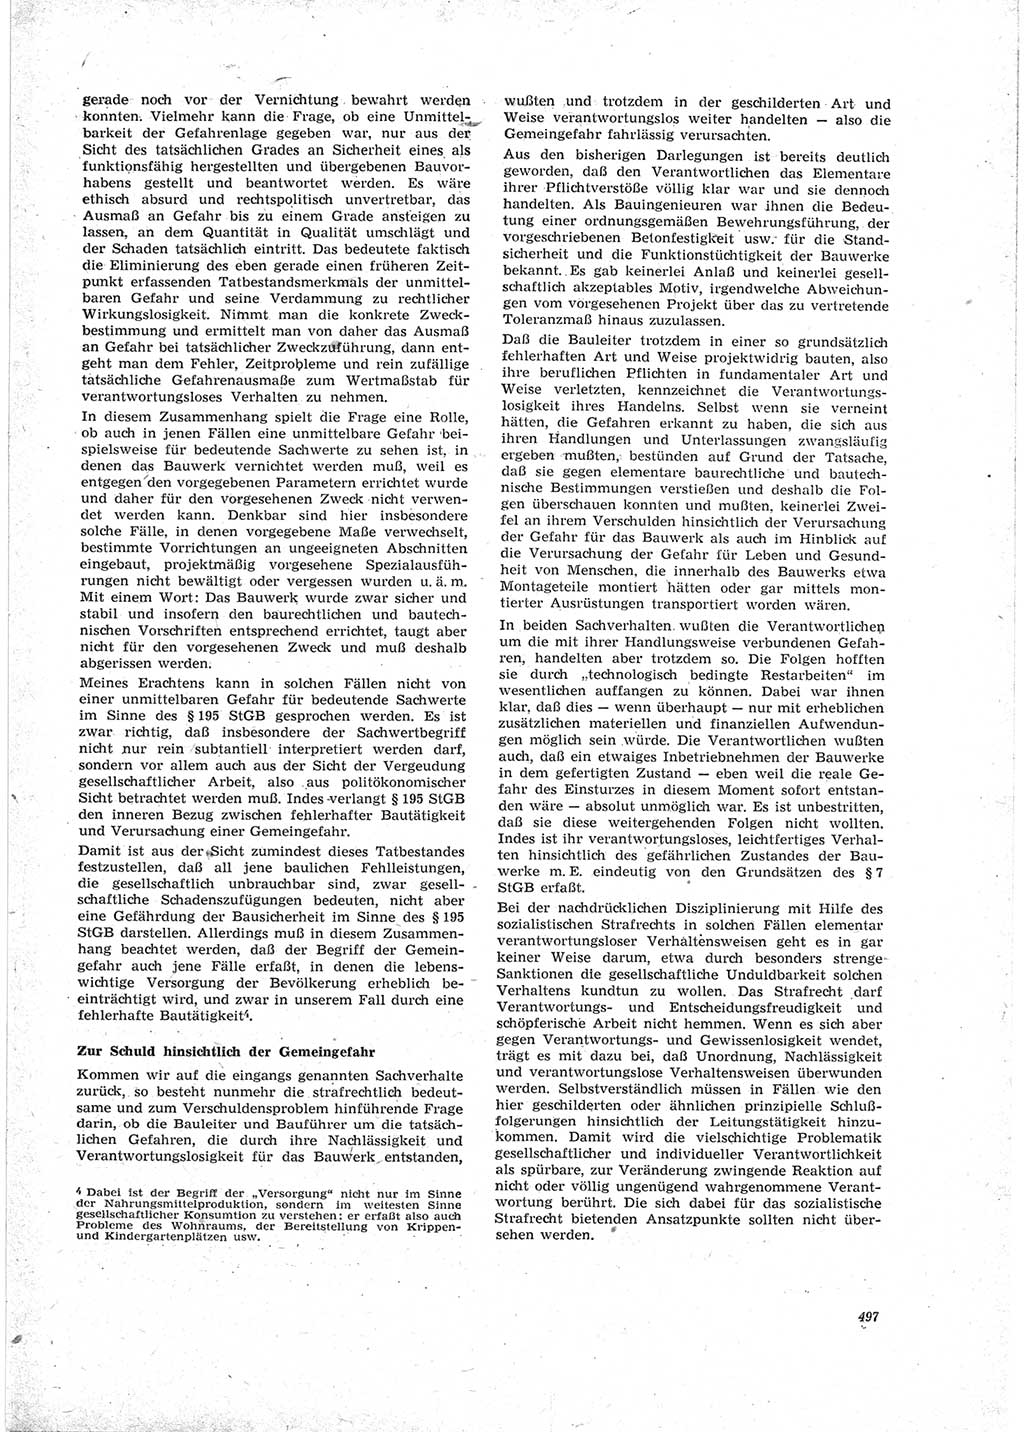 Neue Justiz (NJ), Zeitschrift für Recht und Rechtswissenschaft [Deutsche Demokratische Republik (DDR)], 23. Jahrgang 1969, Seite 497 (NJ DDR 1969, S. 497)